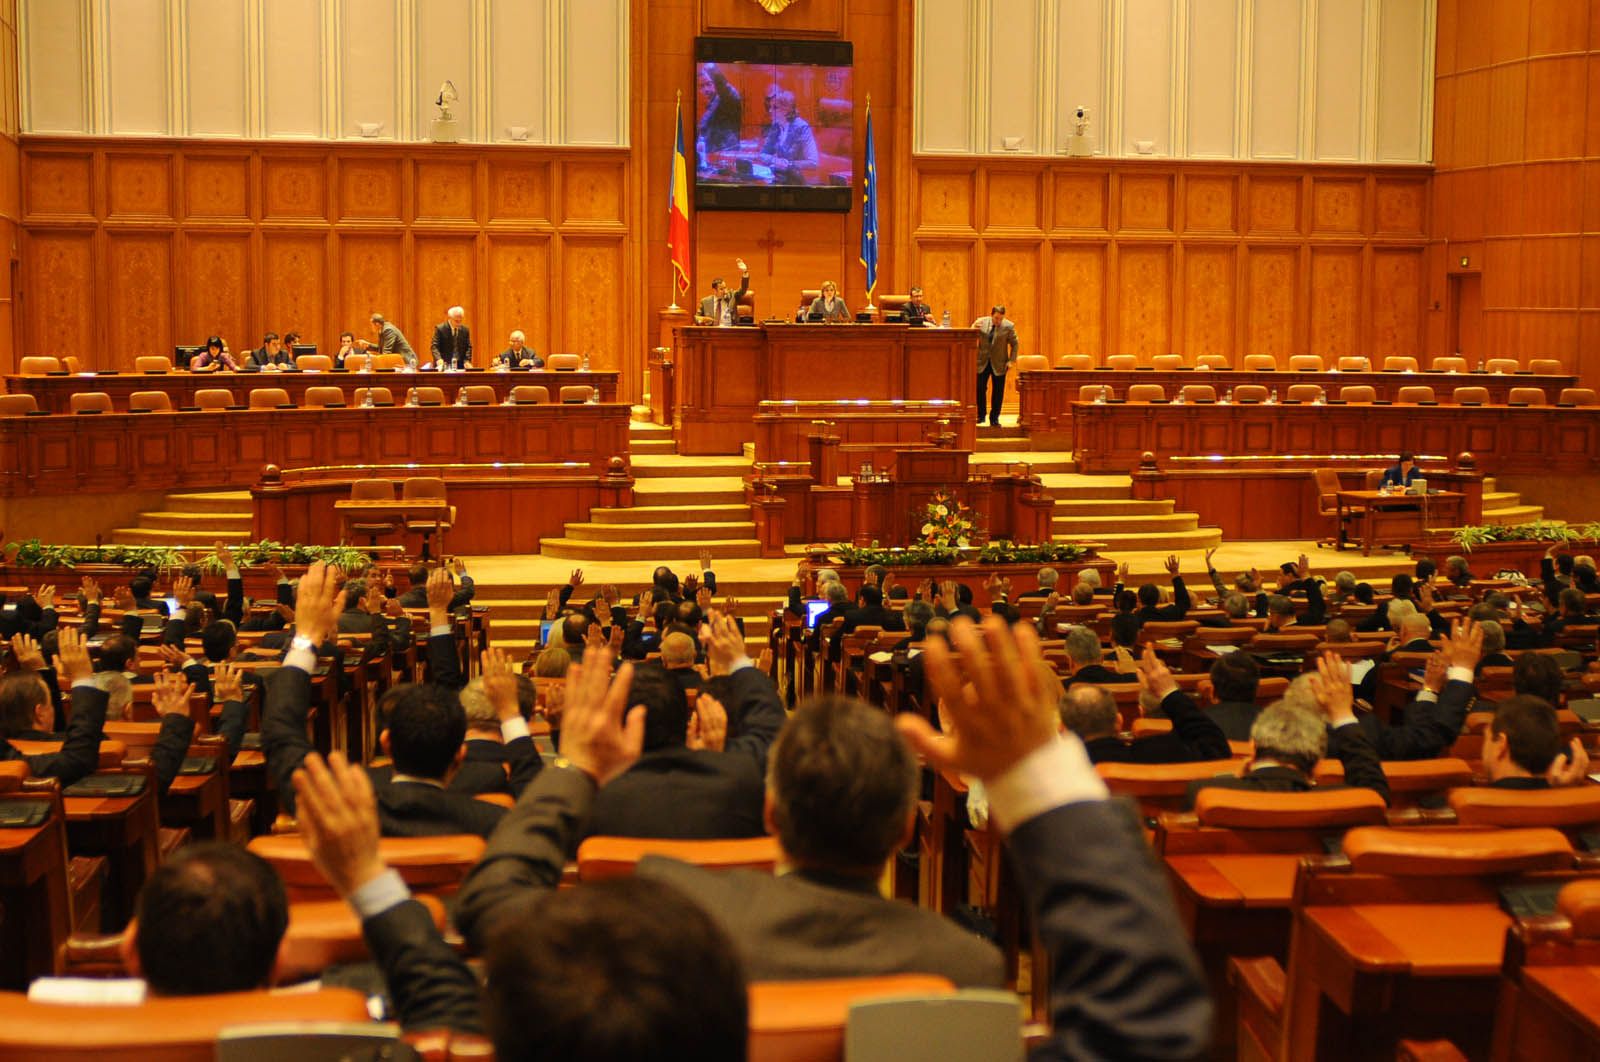 Senatul şi Camera Deputaţilor se întrunesc în prima sesiune ordinară din 2022